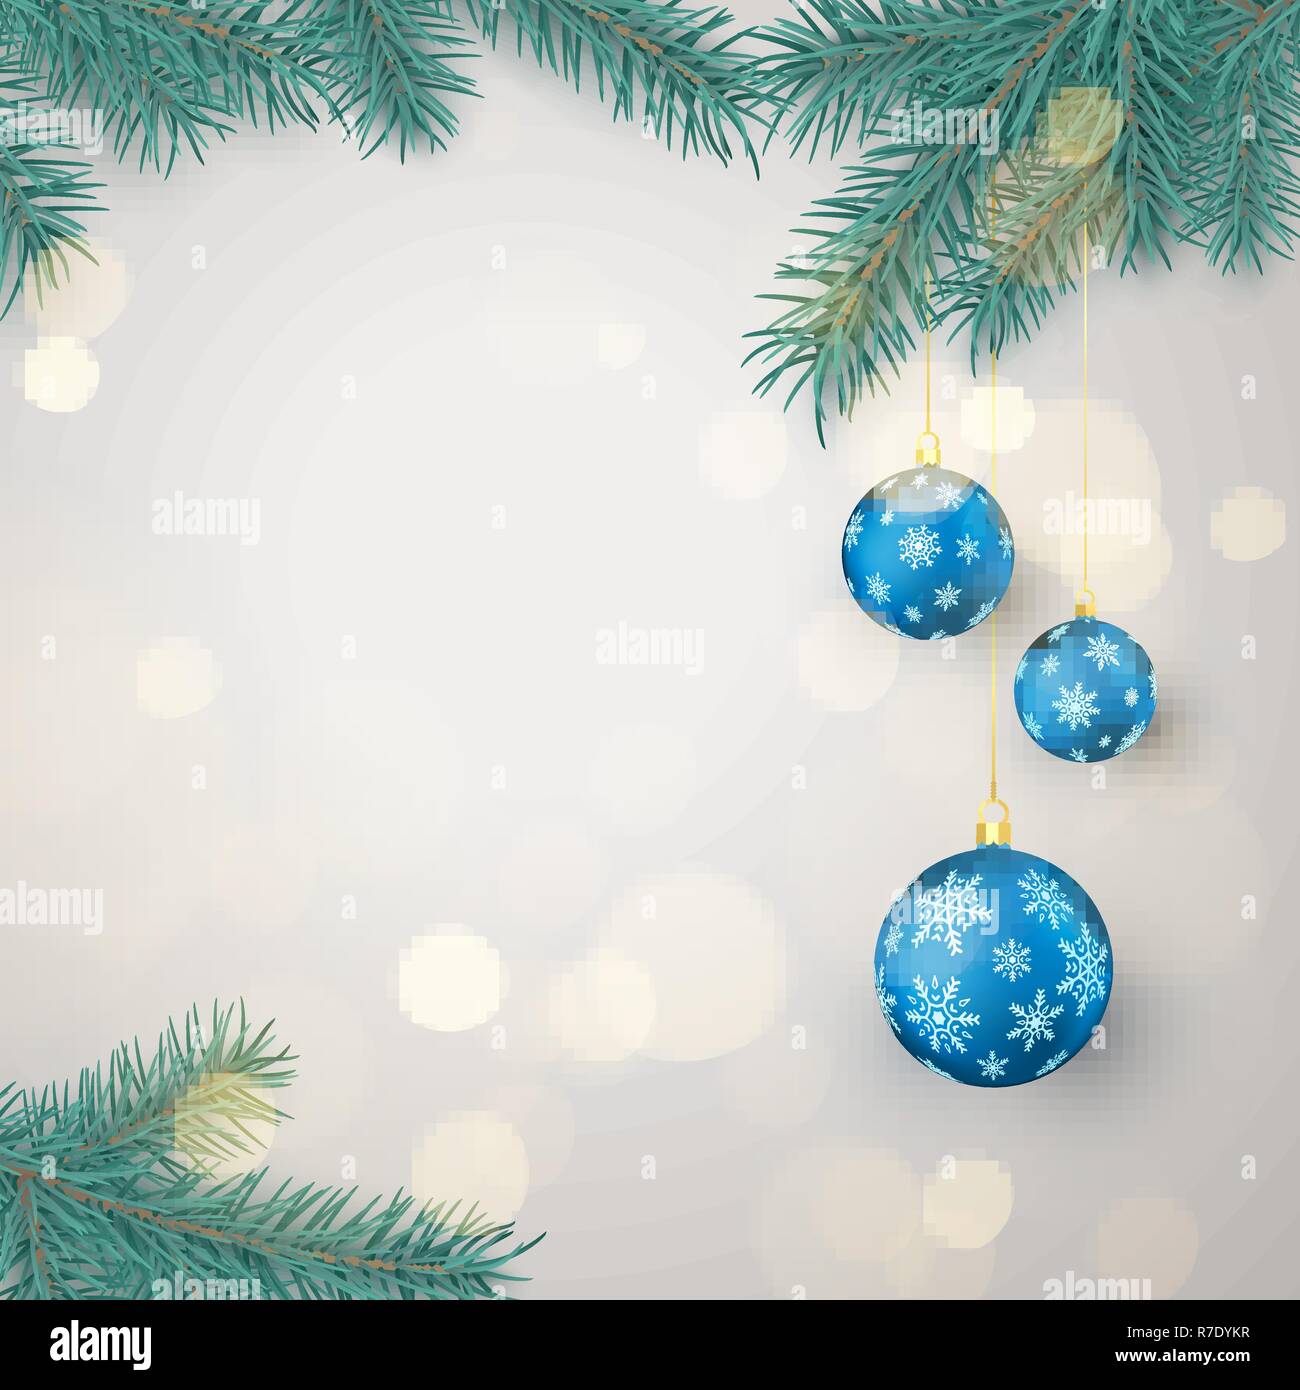 Rametti di abete e blu le palle di Natale con i fiocchi di neve ornamento con spazio per testo di saluto. Decorazione di Natale elementi. Xmas baubles. Illustra il vettore Illustrazione Vettoriale